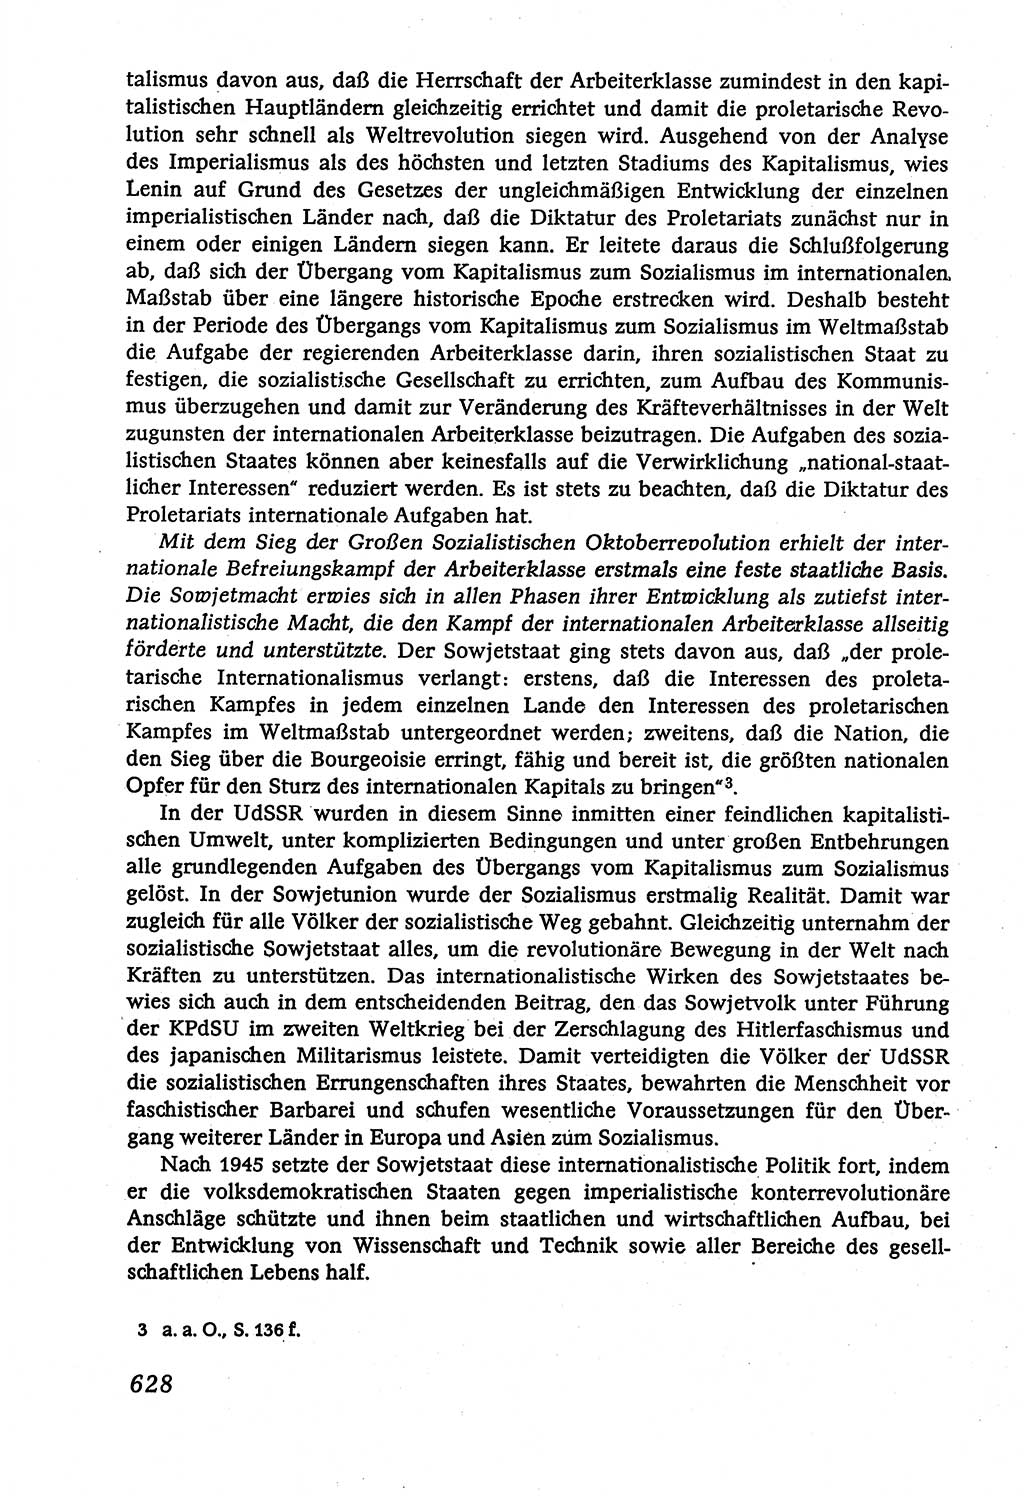 Marxistisch-leninistische (ML) Staats- und Rechtstheorie [Deutsche Demokratische Republik (DDR)], Lehrbuch 1980, Seite 628 (ML St.-R.-Th. DDR Lb. 1980, S. 628)